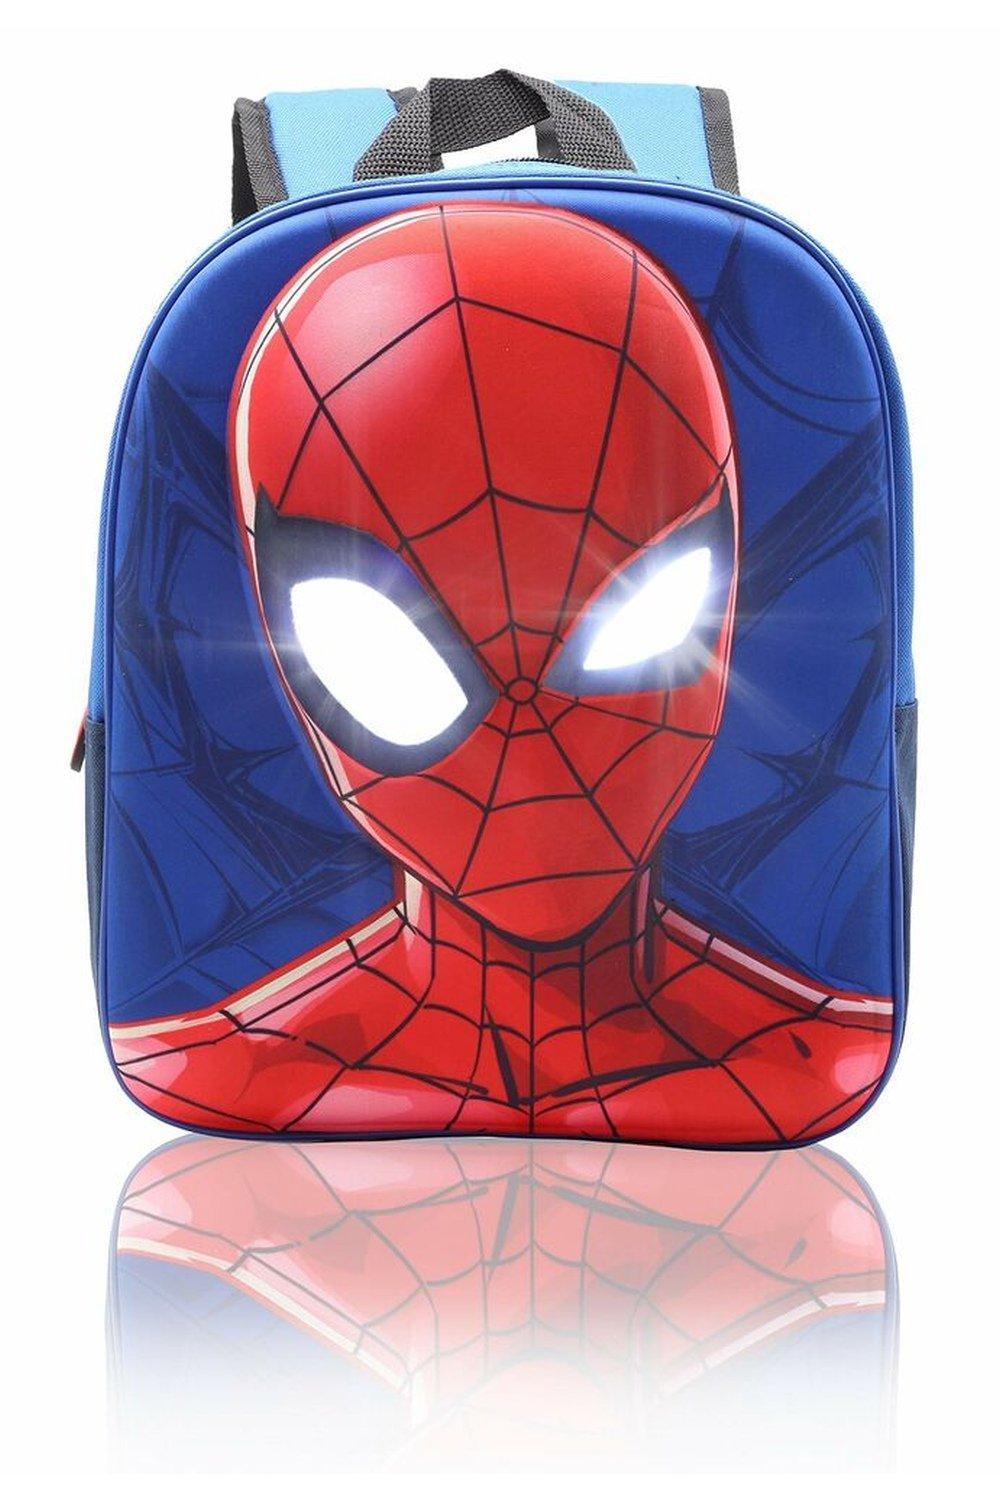 Рюкзак Человека-паука с подсветкой глаз Marvel, синий женский рюкзак с мини принтом для маникюра женский школьный рюкзак рюкзак для девочек детский школьный рюкзак рюкзак